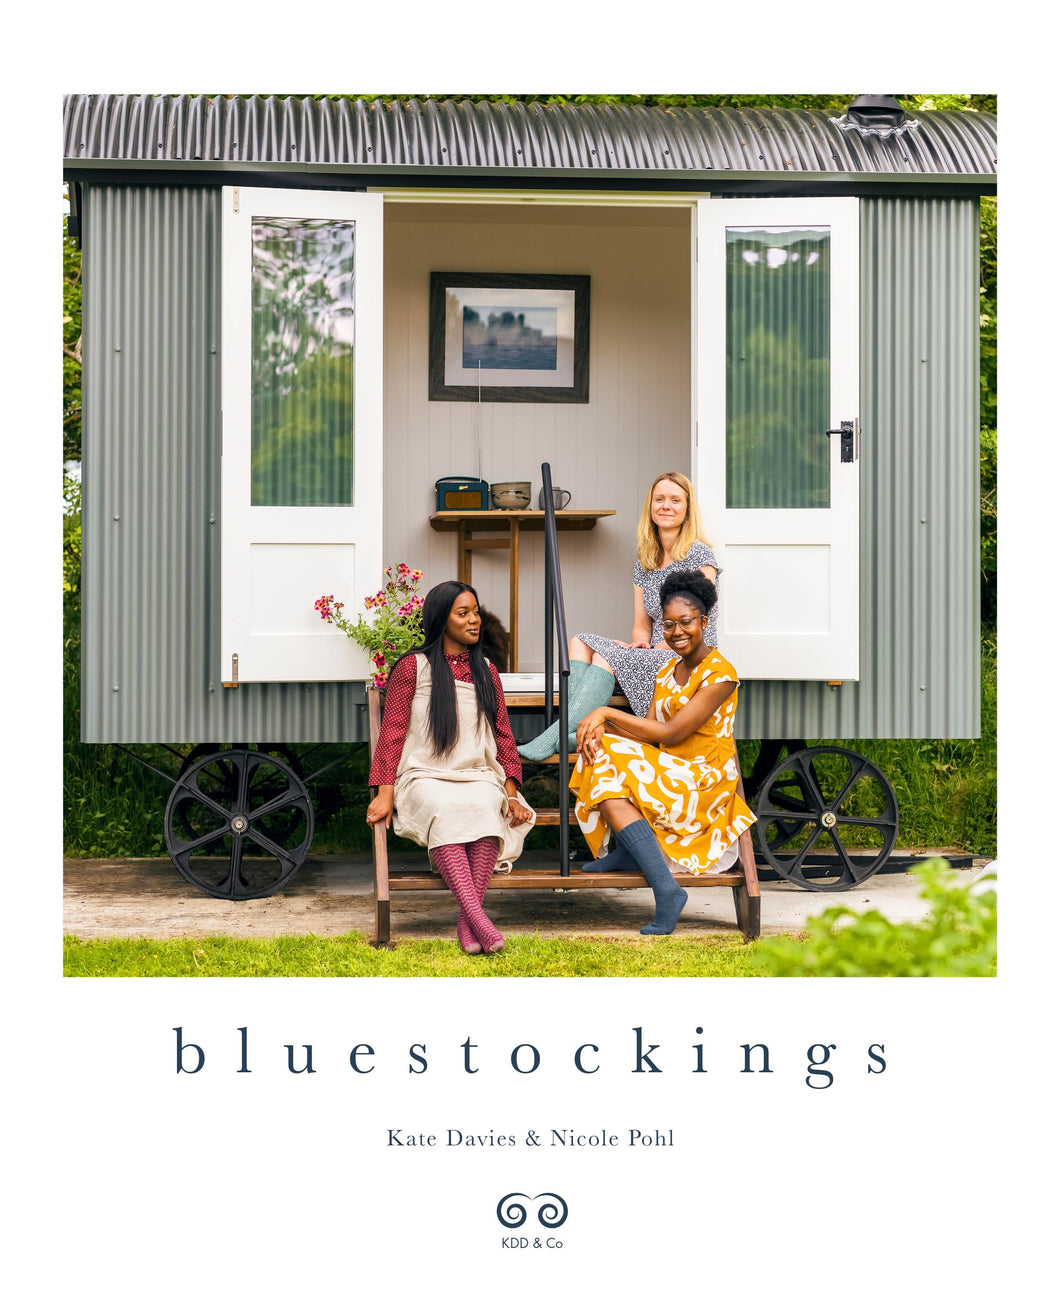 Bluestockings by Kate Davies & Nicole Pohl